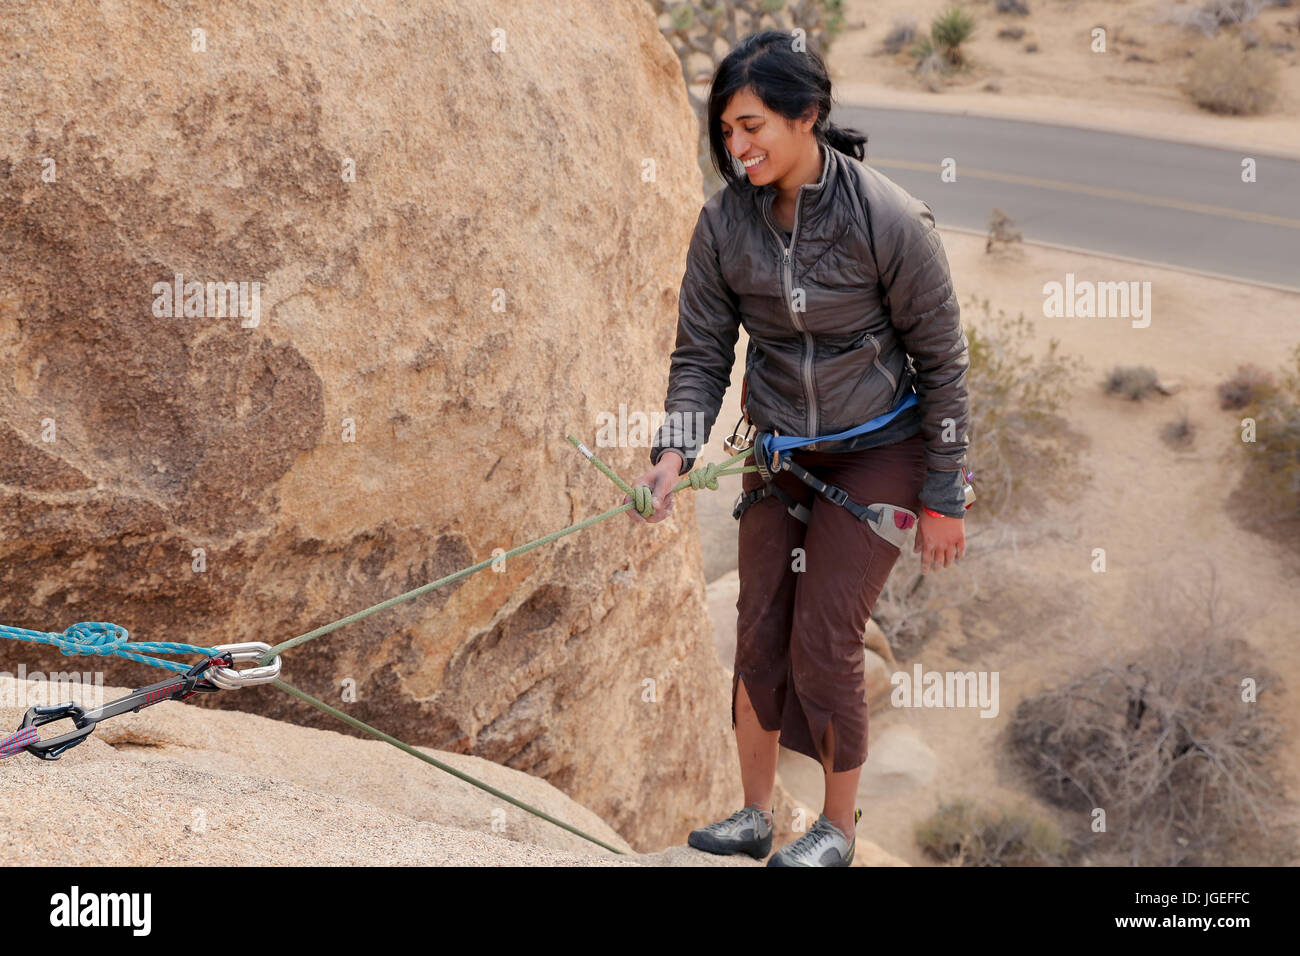 Junge asiatische Frau Felsen klettert in der Wüste auf eine sehr schwierige Wand Stockfoto